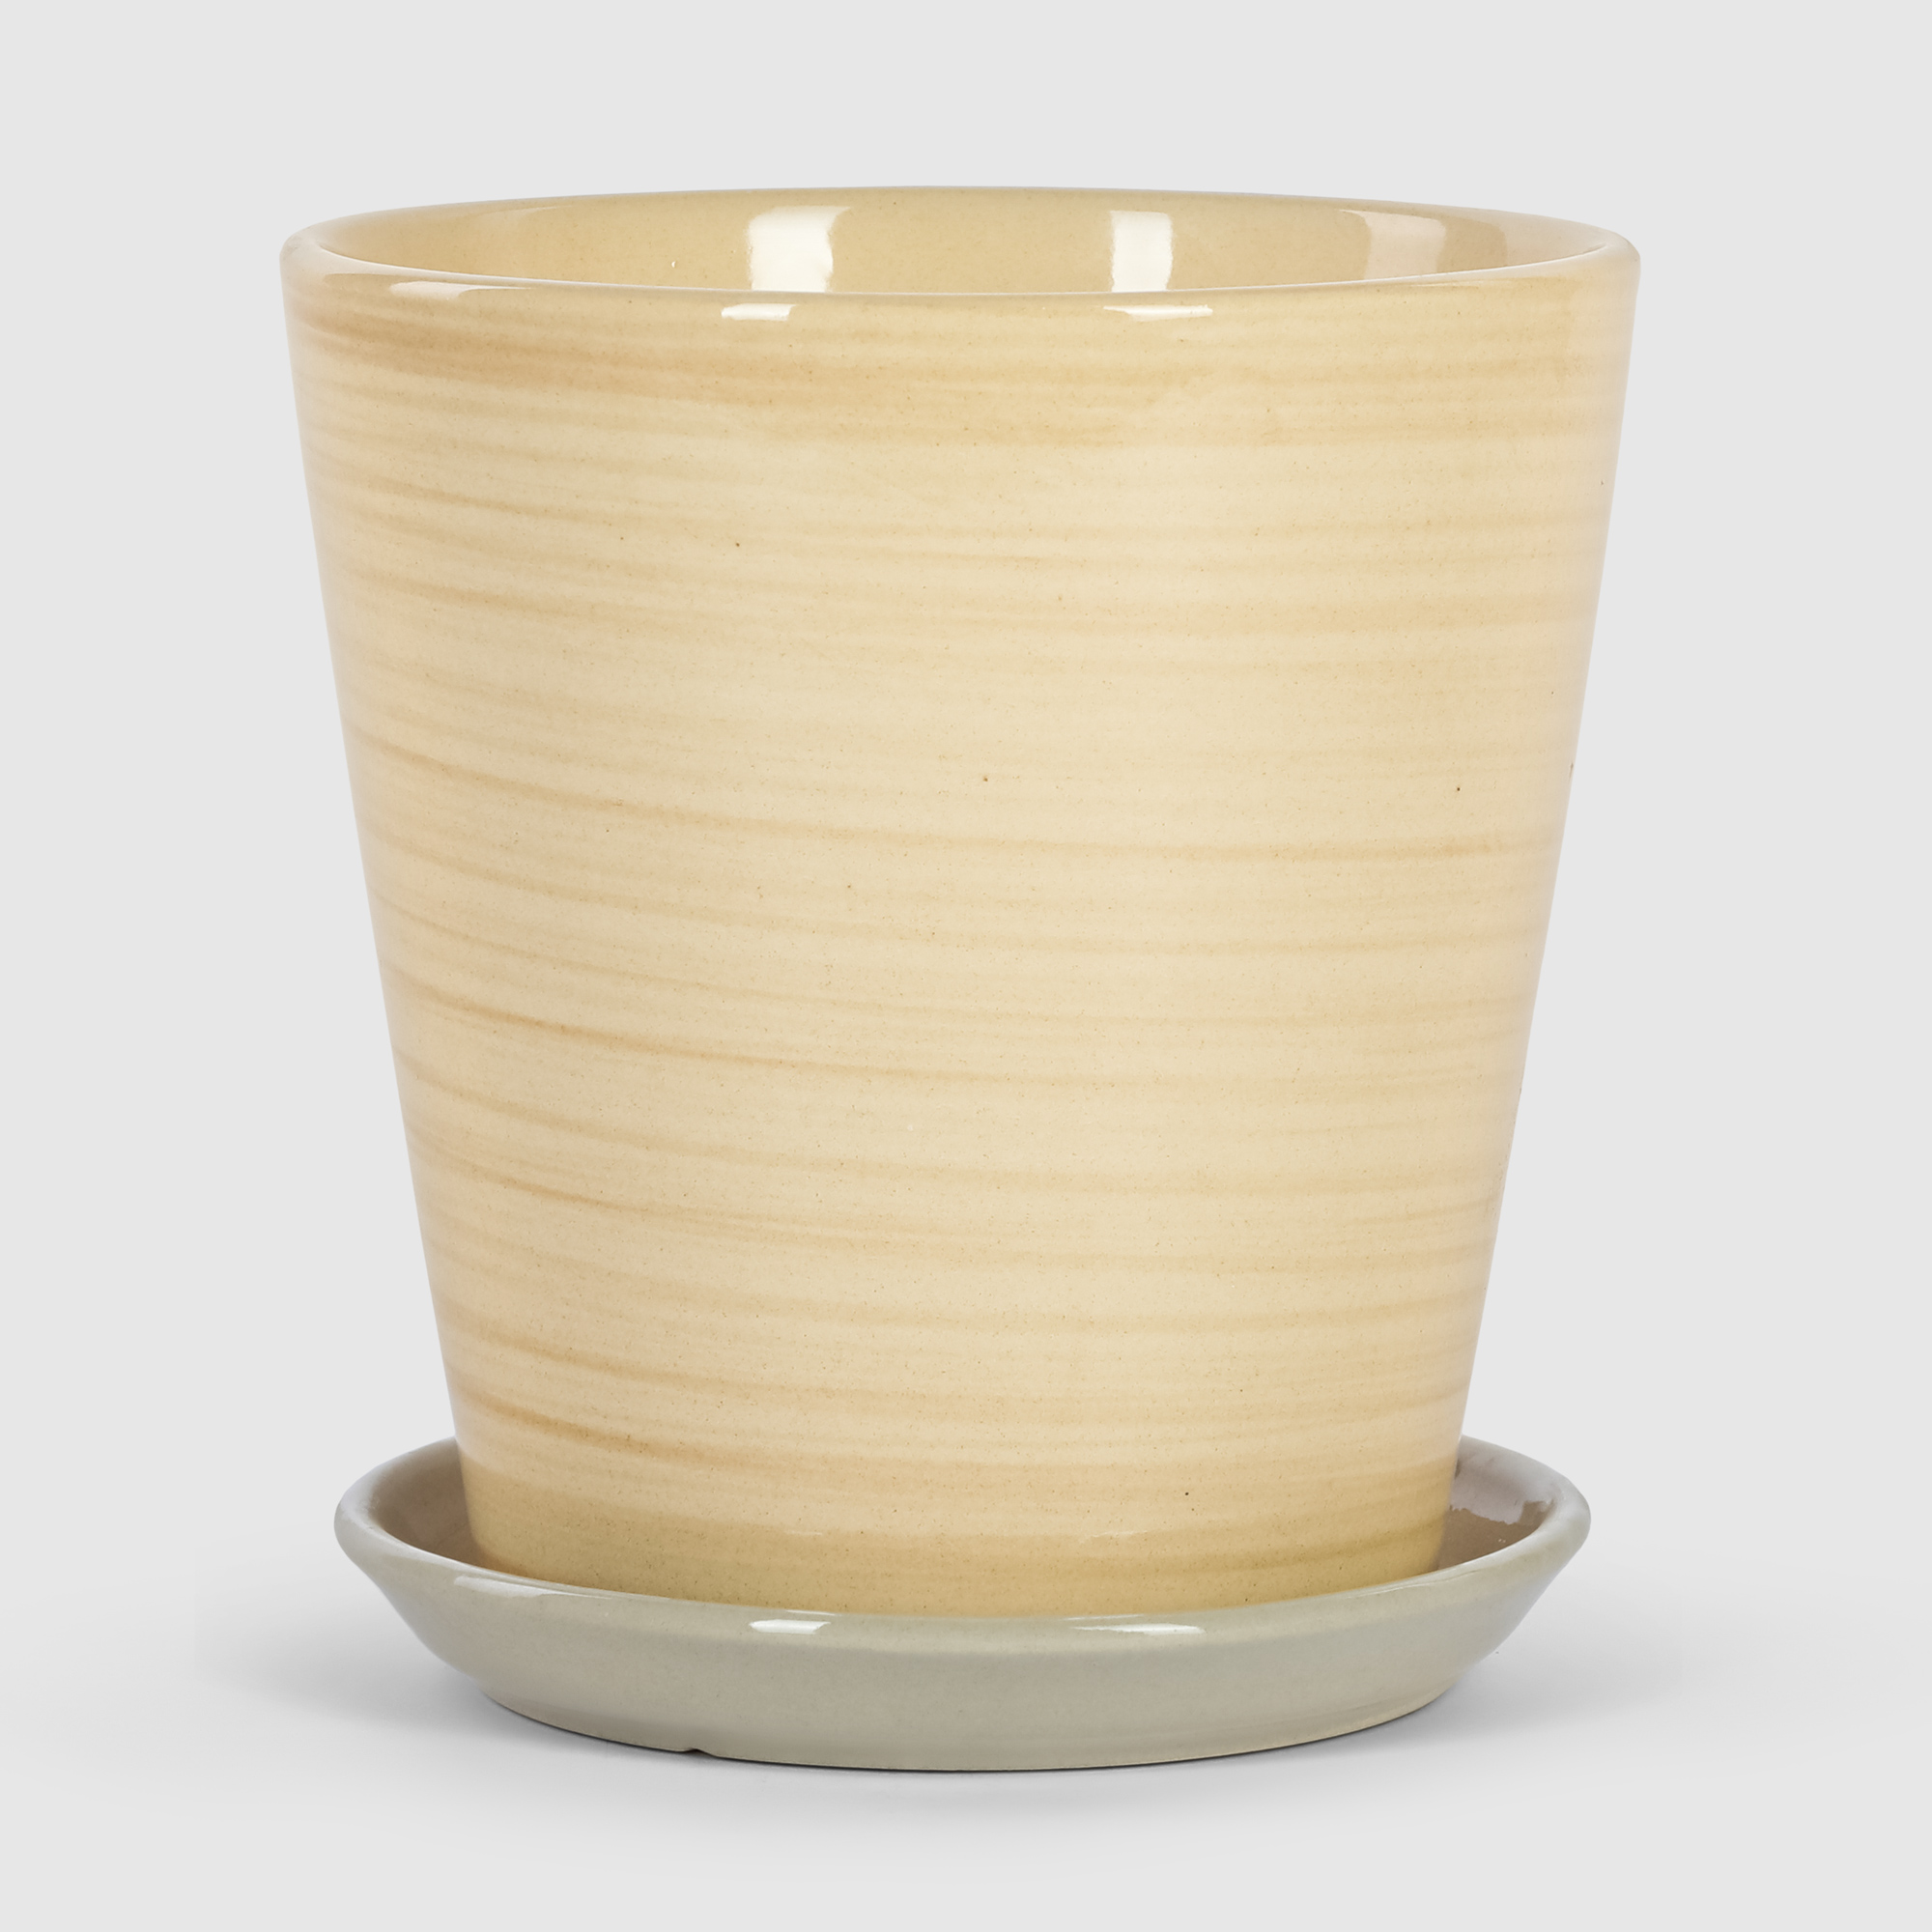 Кашпо керамическое для цветов Shine Pots 20x20см бежевое полосатое кашпо керамическое для ов shine pots 20x20см песочный